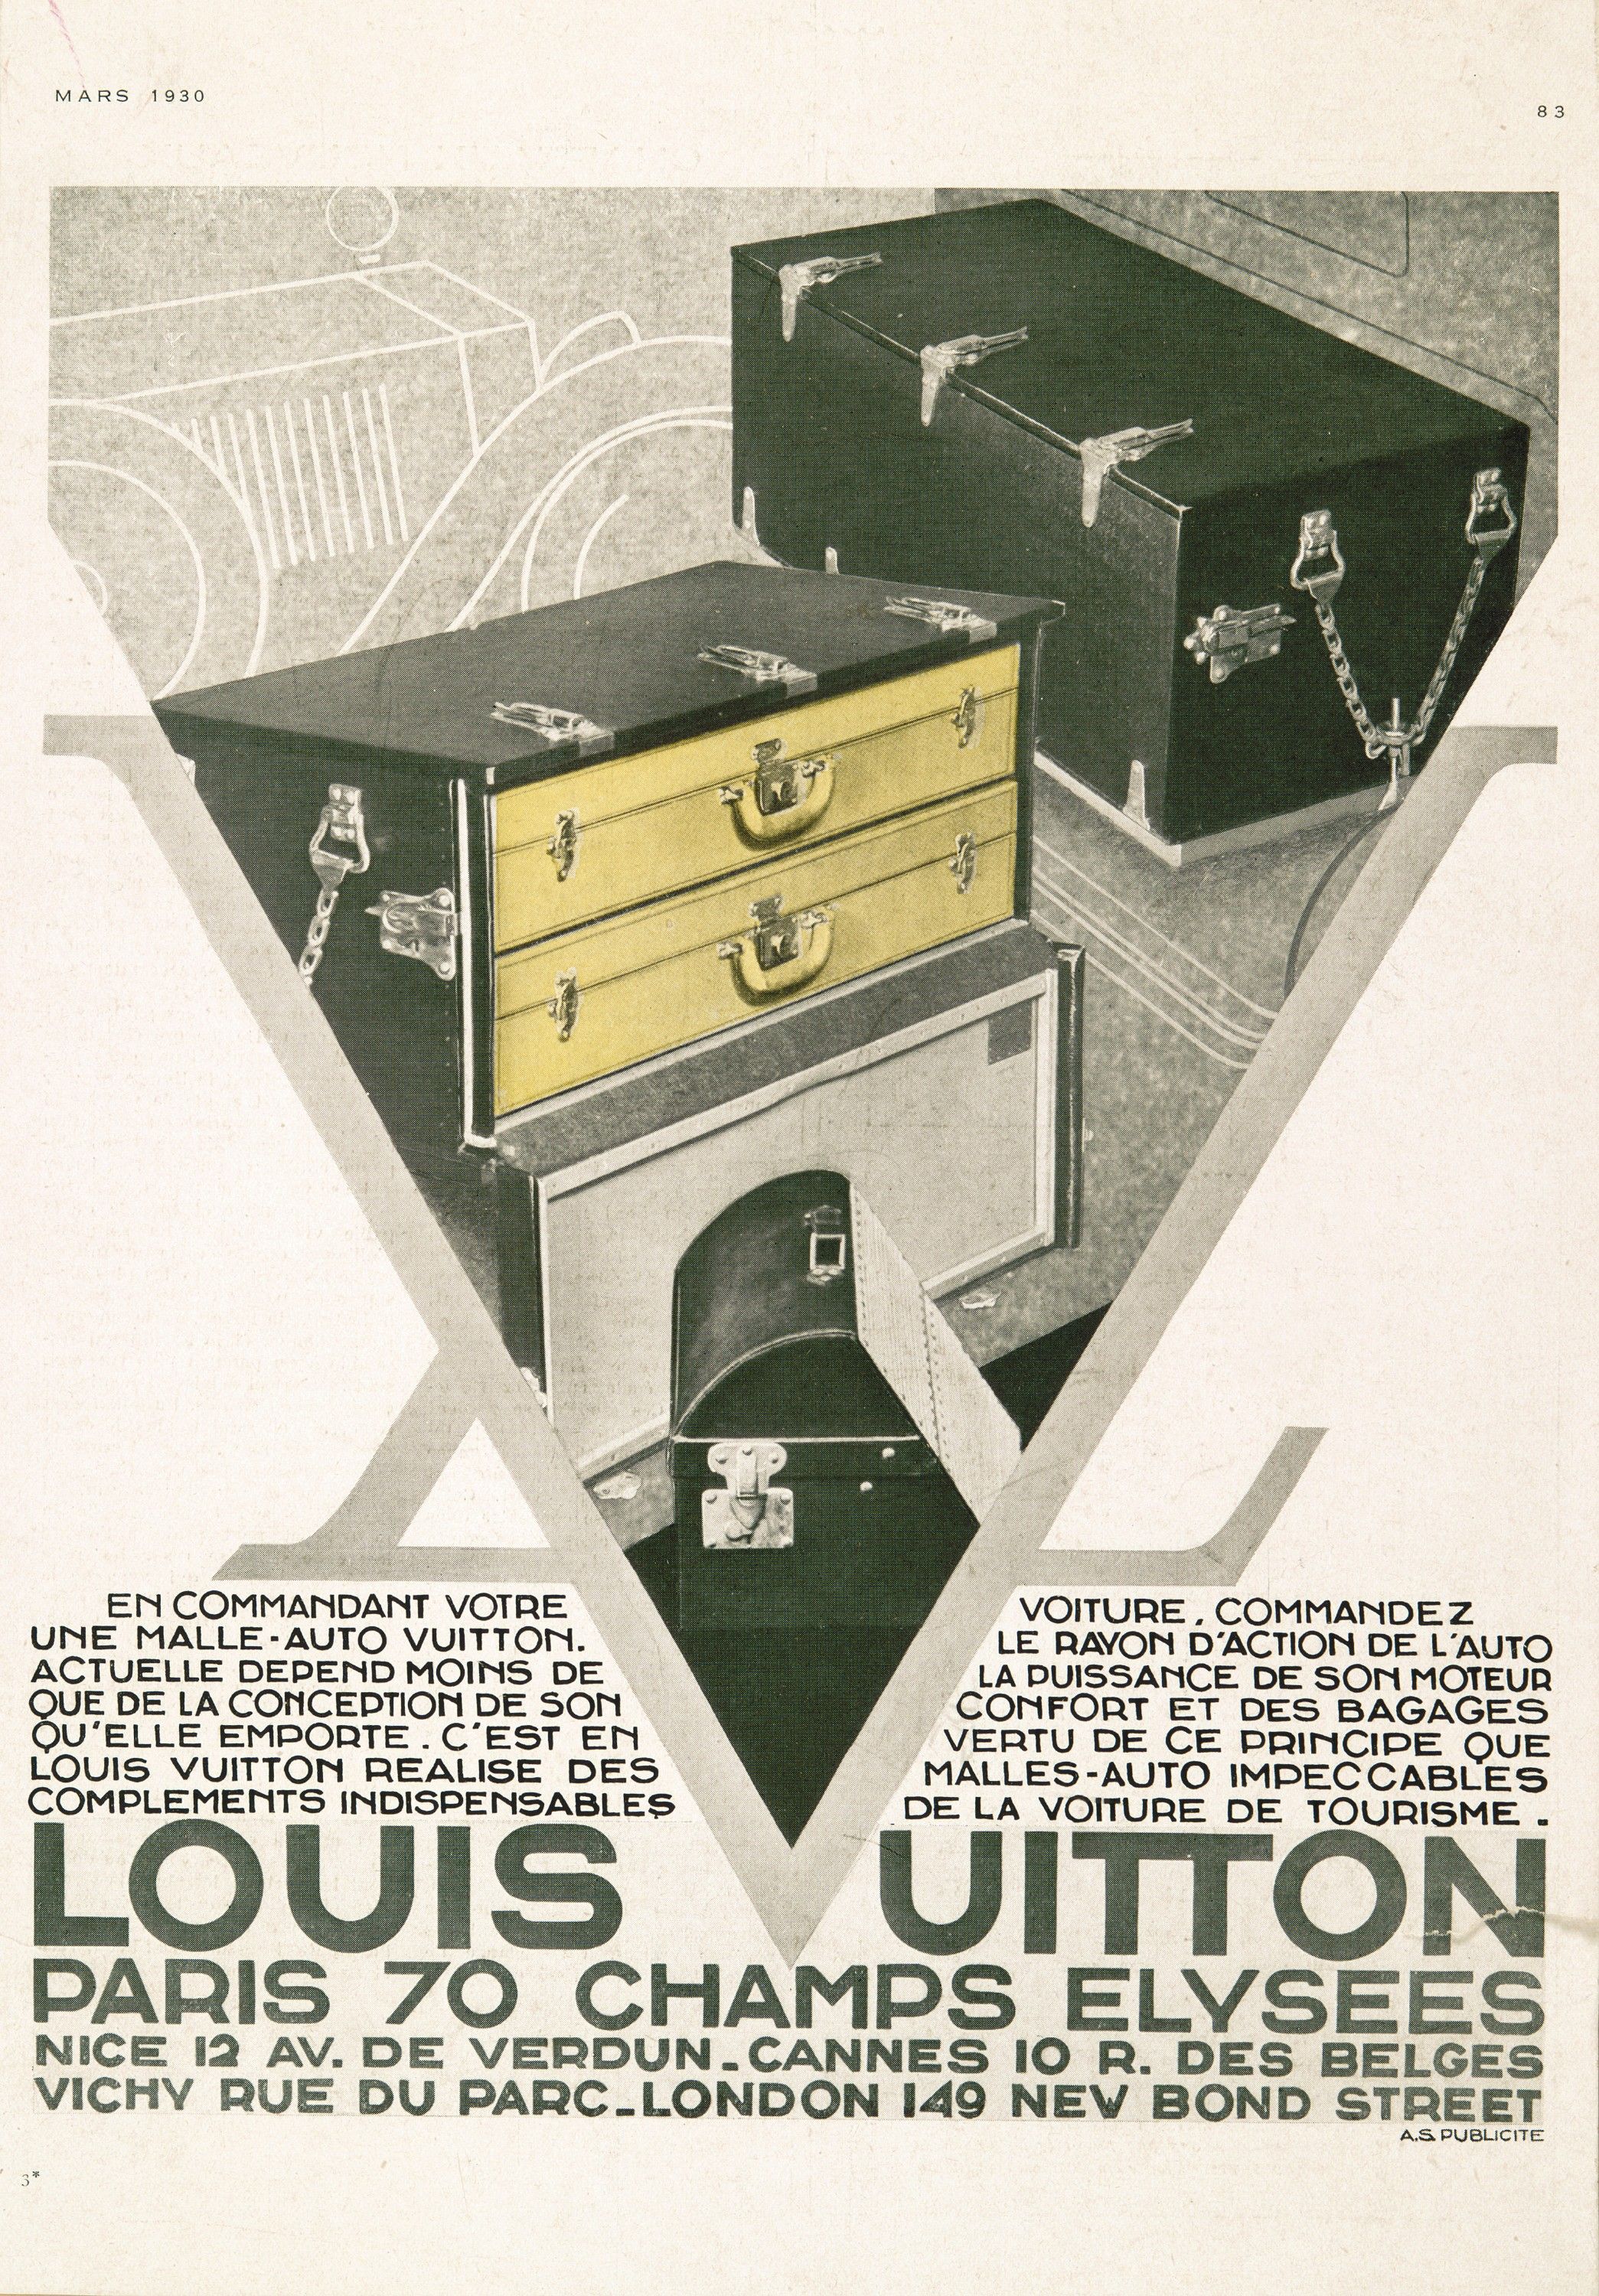 La historia de Louis Vuitton y la casa-atelier donde comenzó el mito de las  maletas más famosas del mundo